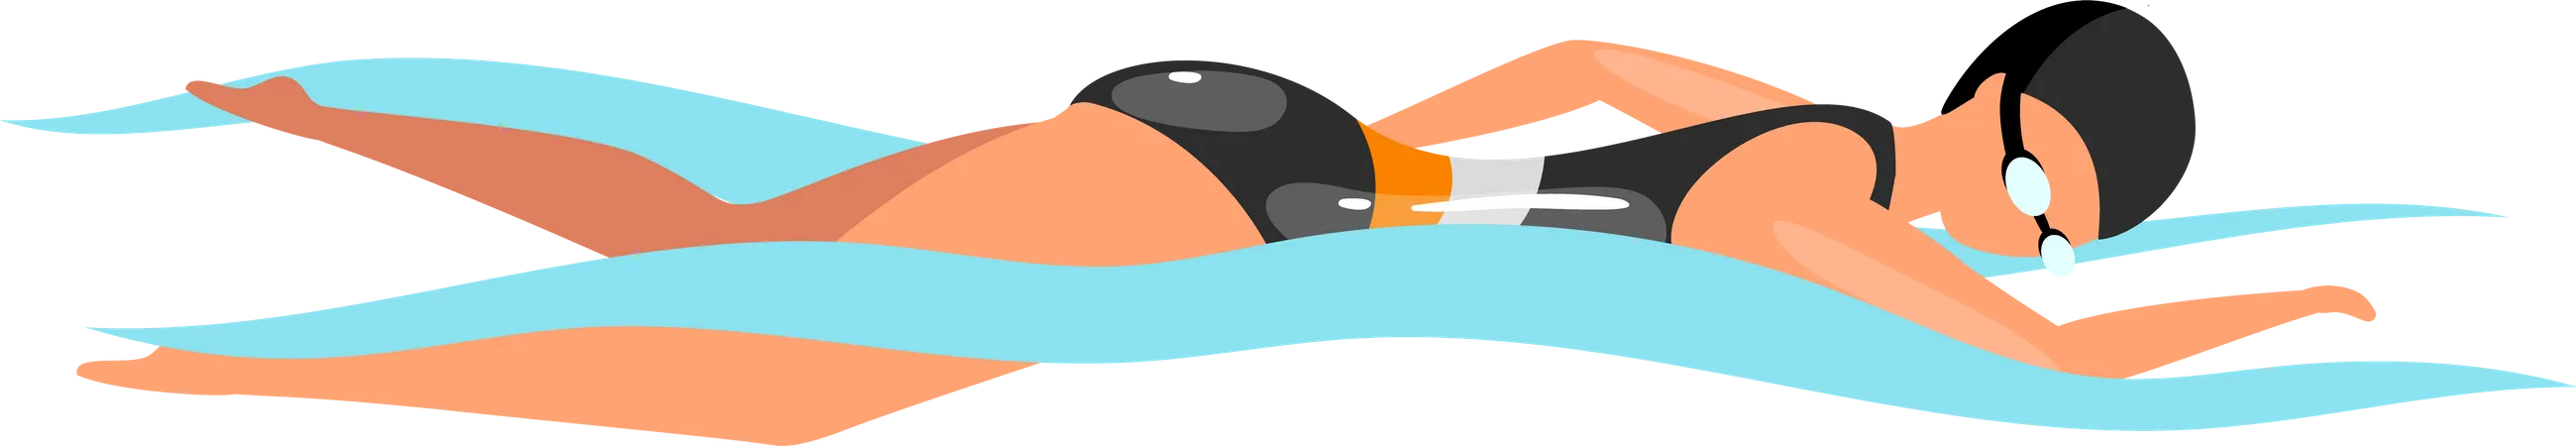 Swimming  Illustration